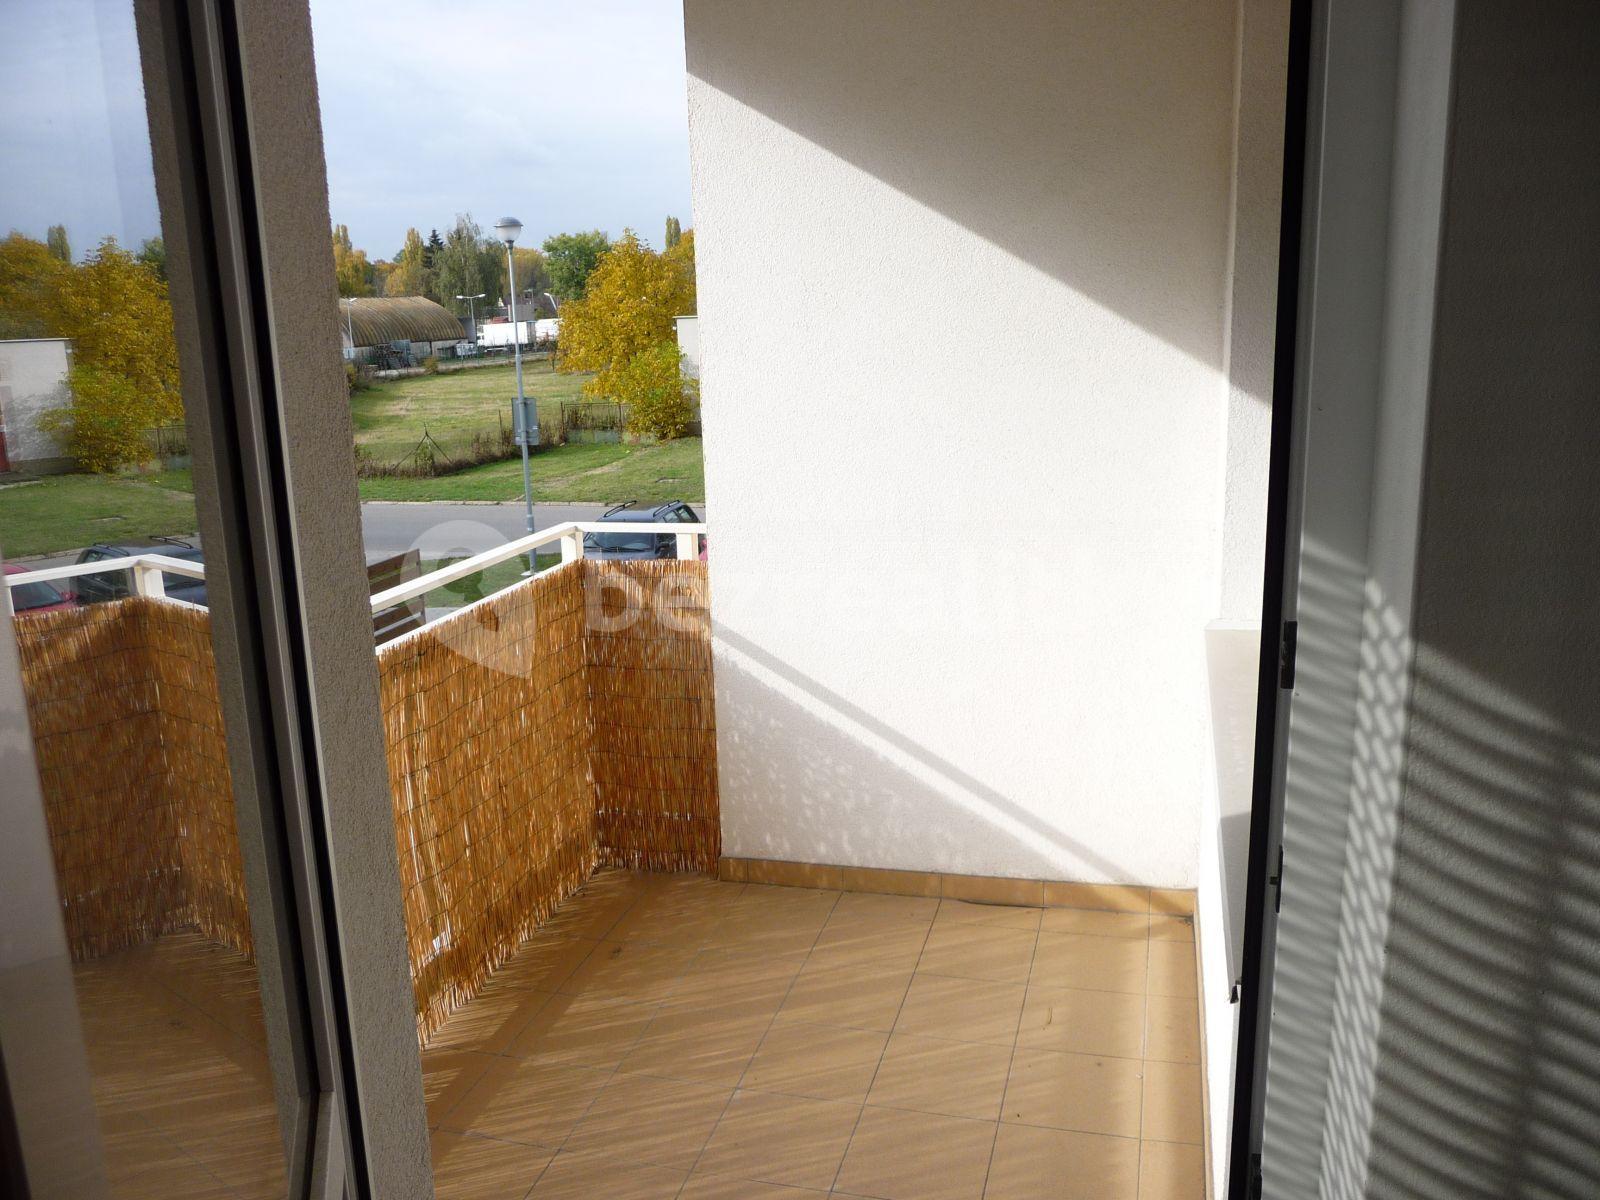 1 bedroom with open-plan kitchen flat to rent, 57 m², Poděbrady, Středočeský Region